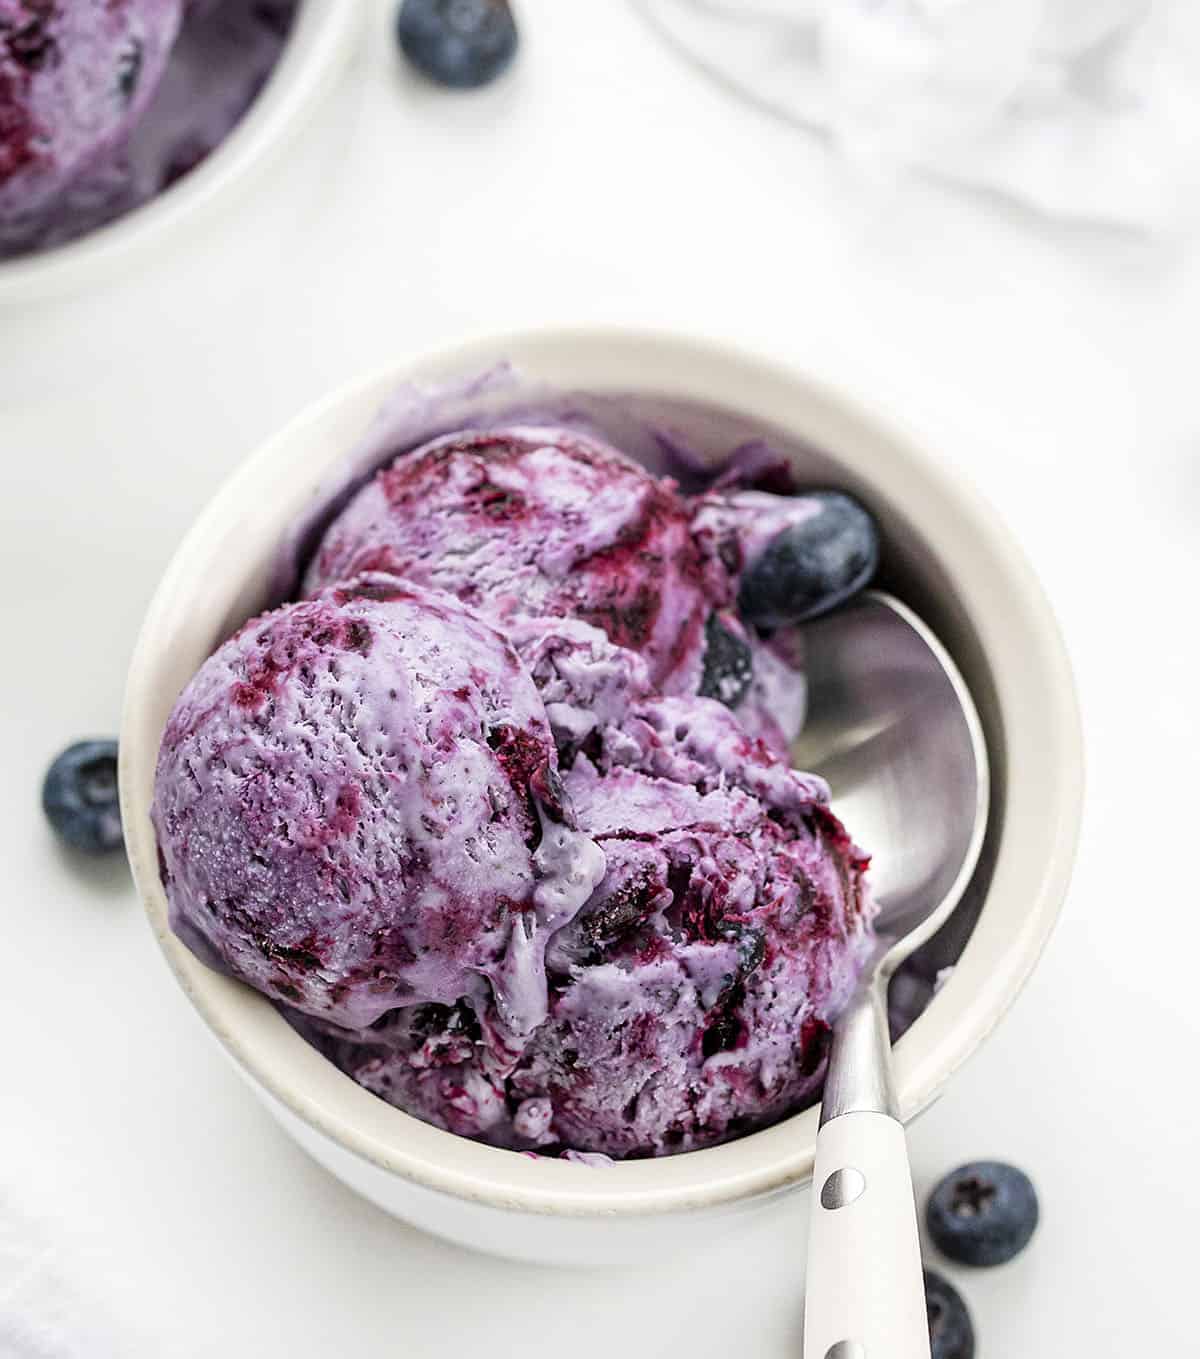 The Basics of Making Blueberry Ice Cream